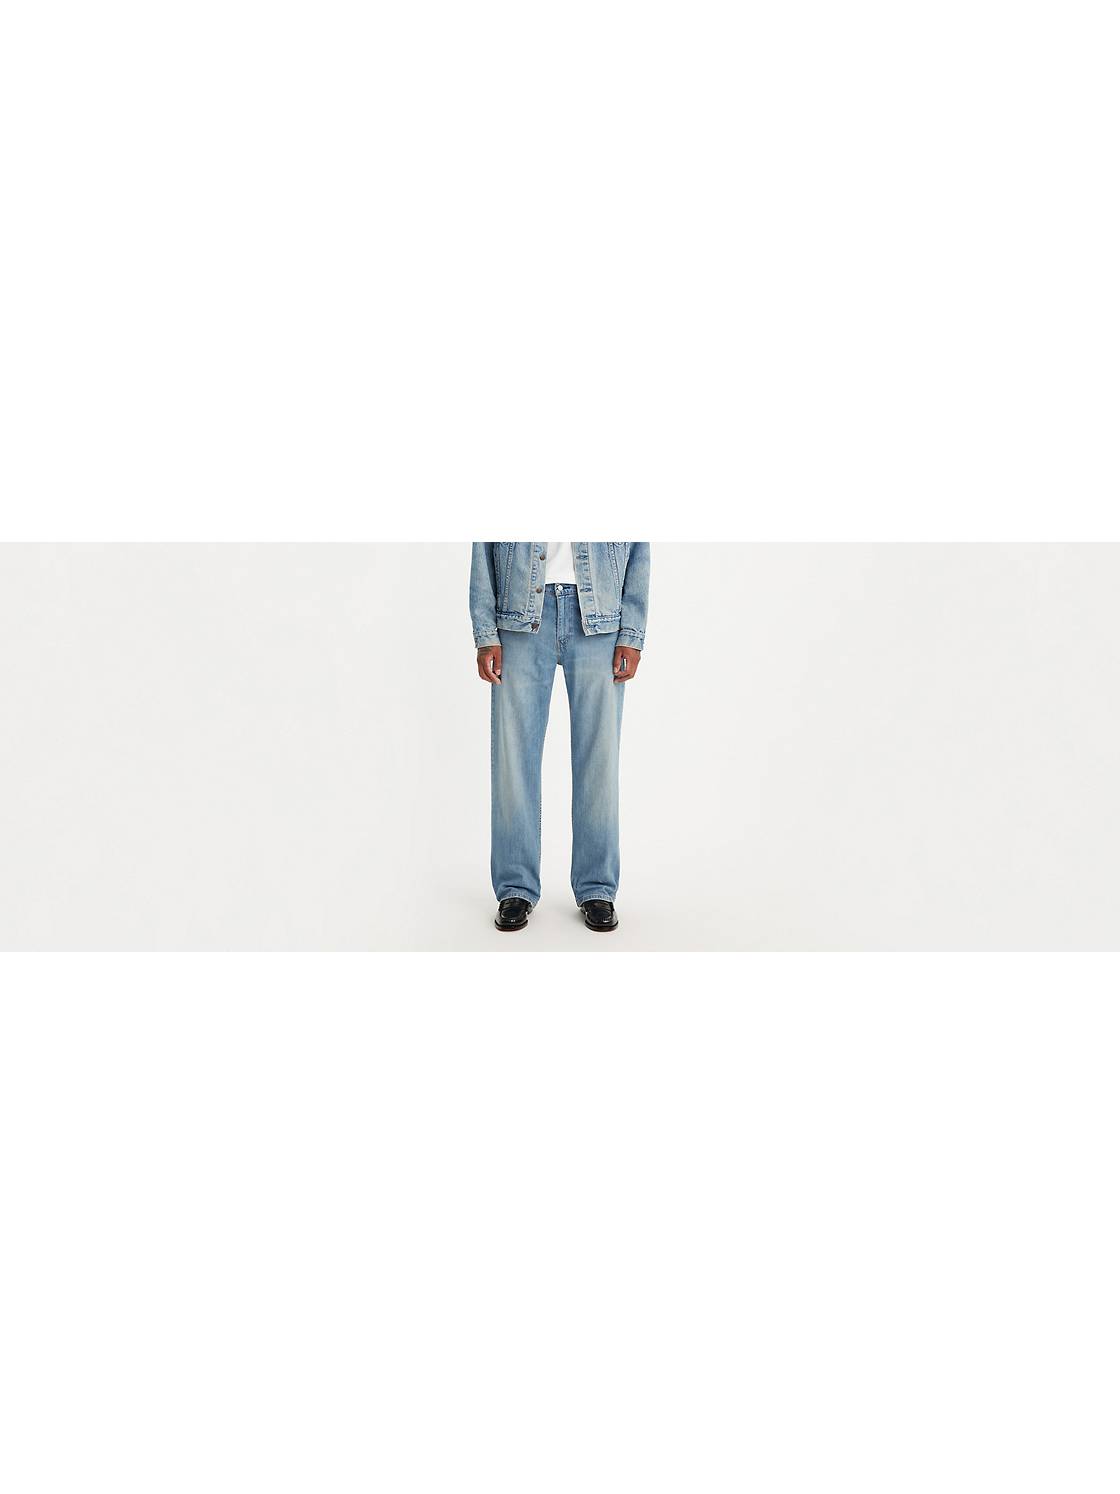 Men's Baggy Jeans: Shop Men's Loose Fit Jeans | Levi's® US